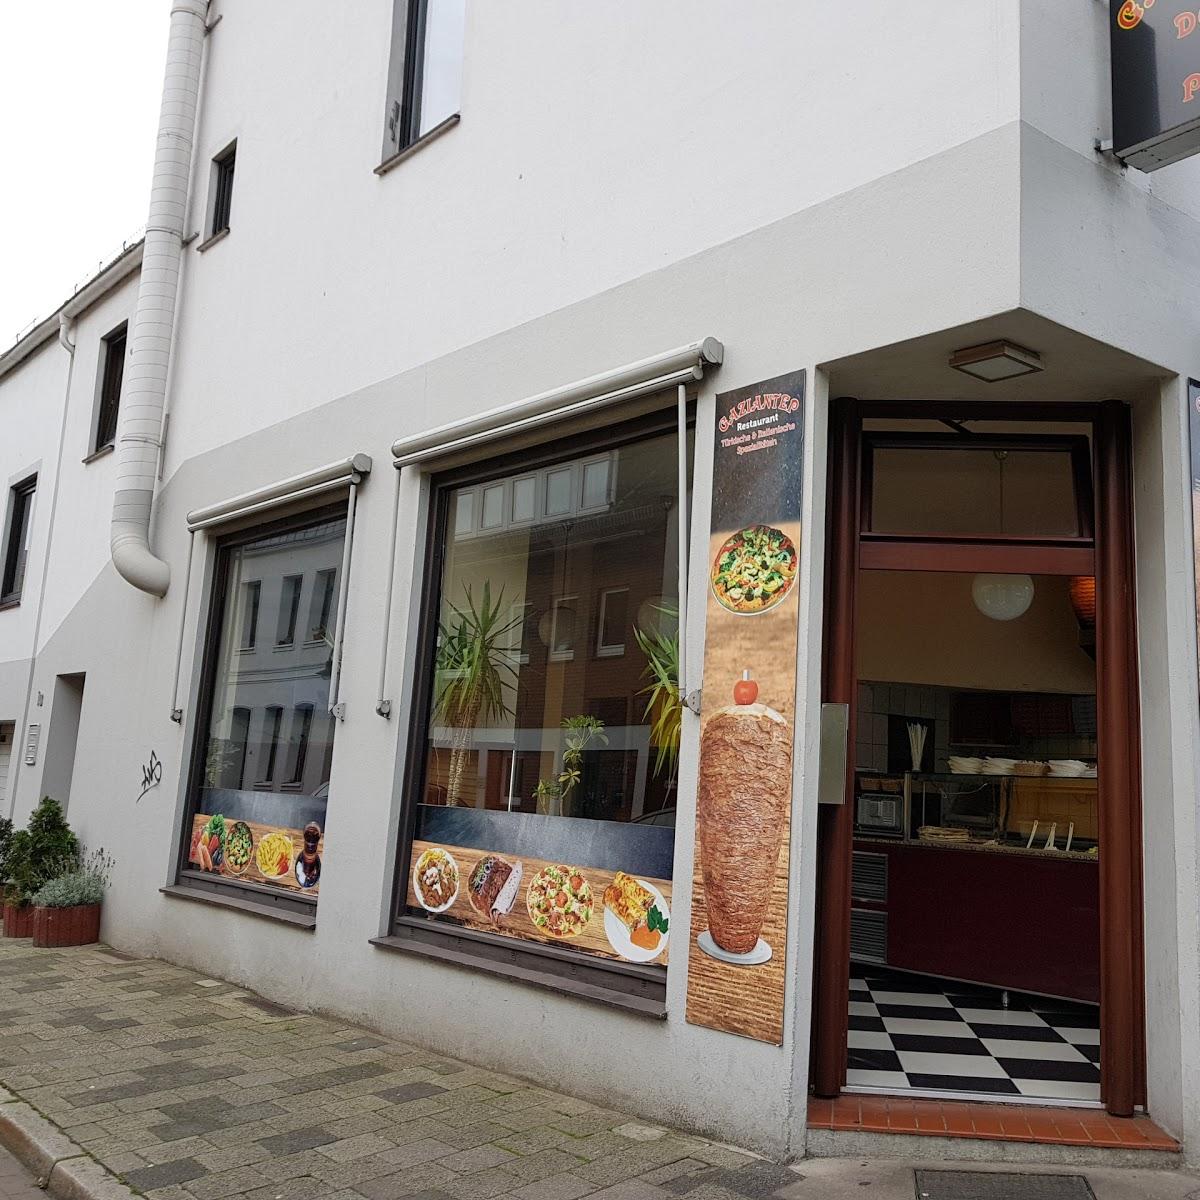 Restaurant "Gaziantep Kebabhaus" in Bremen